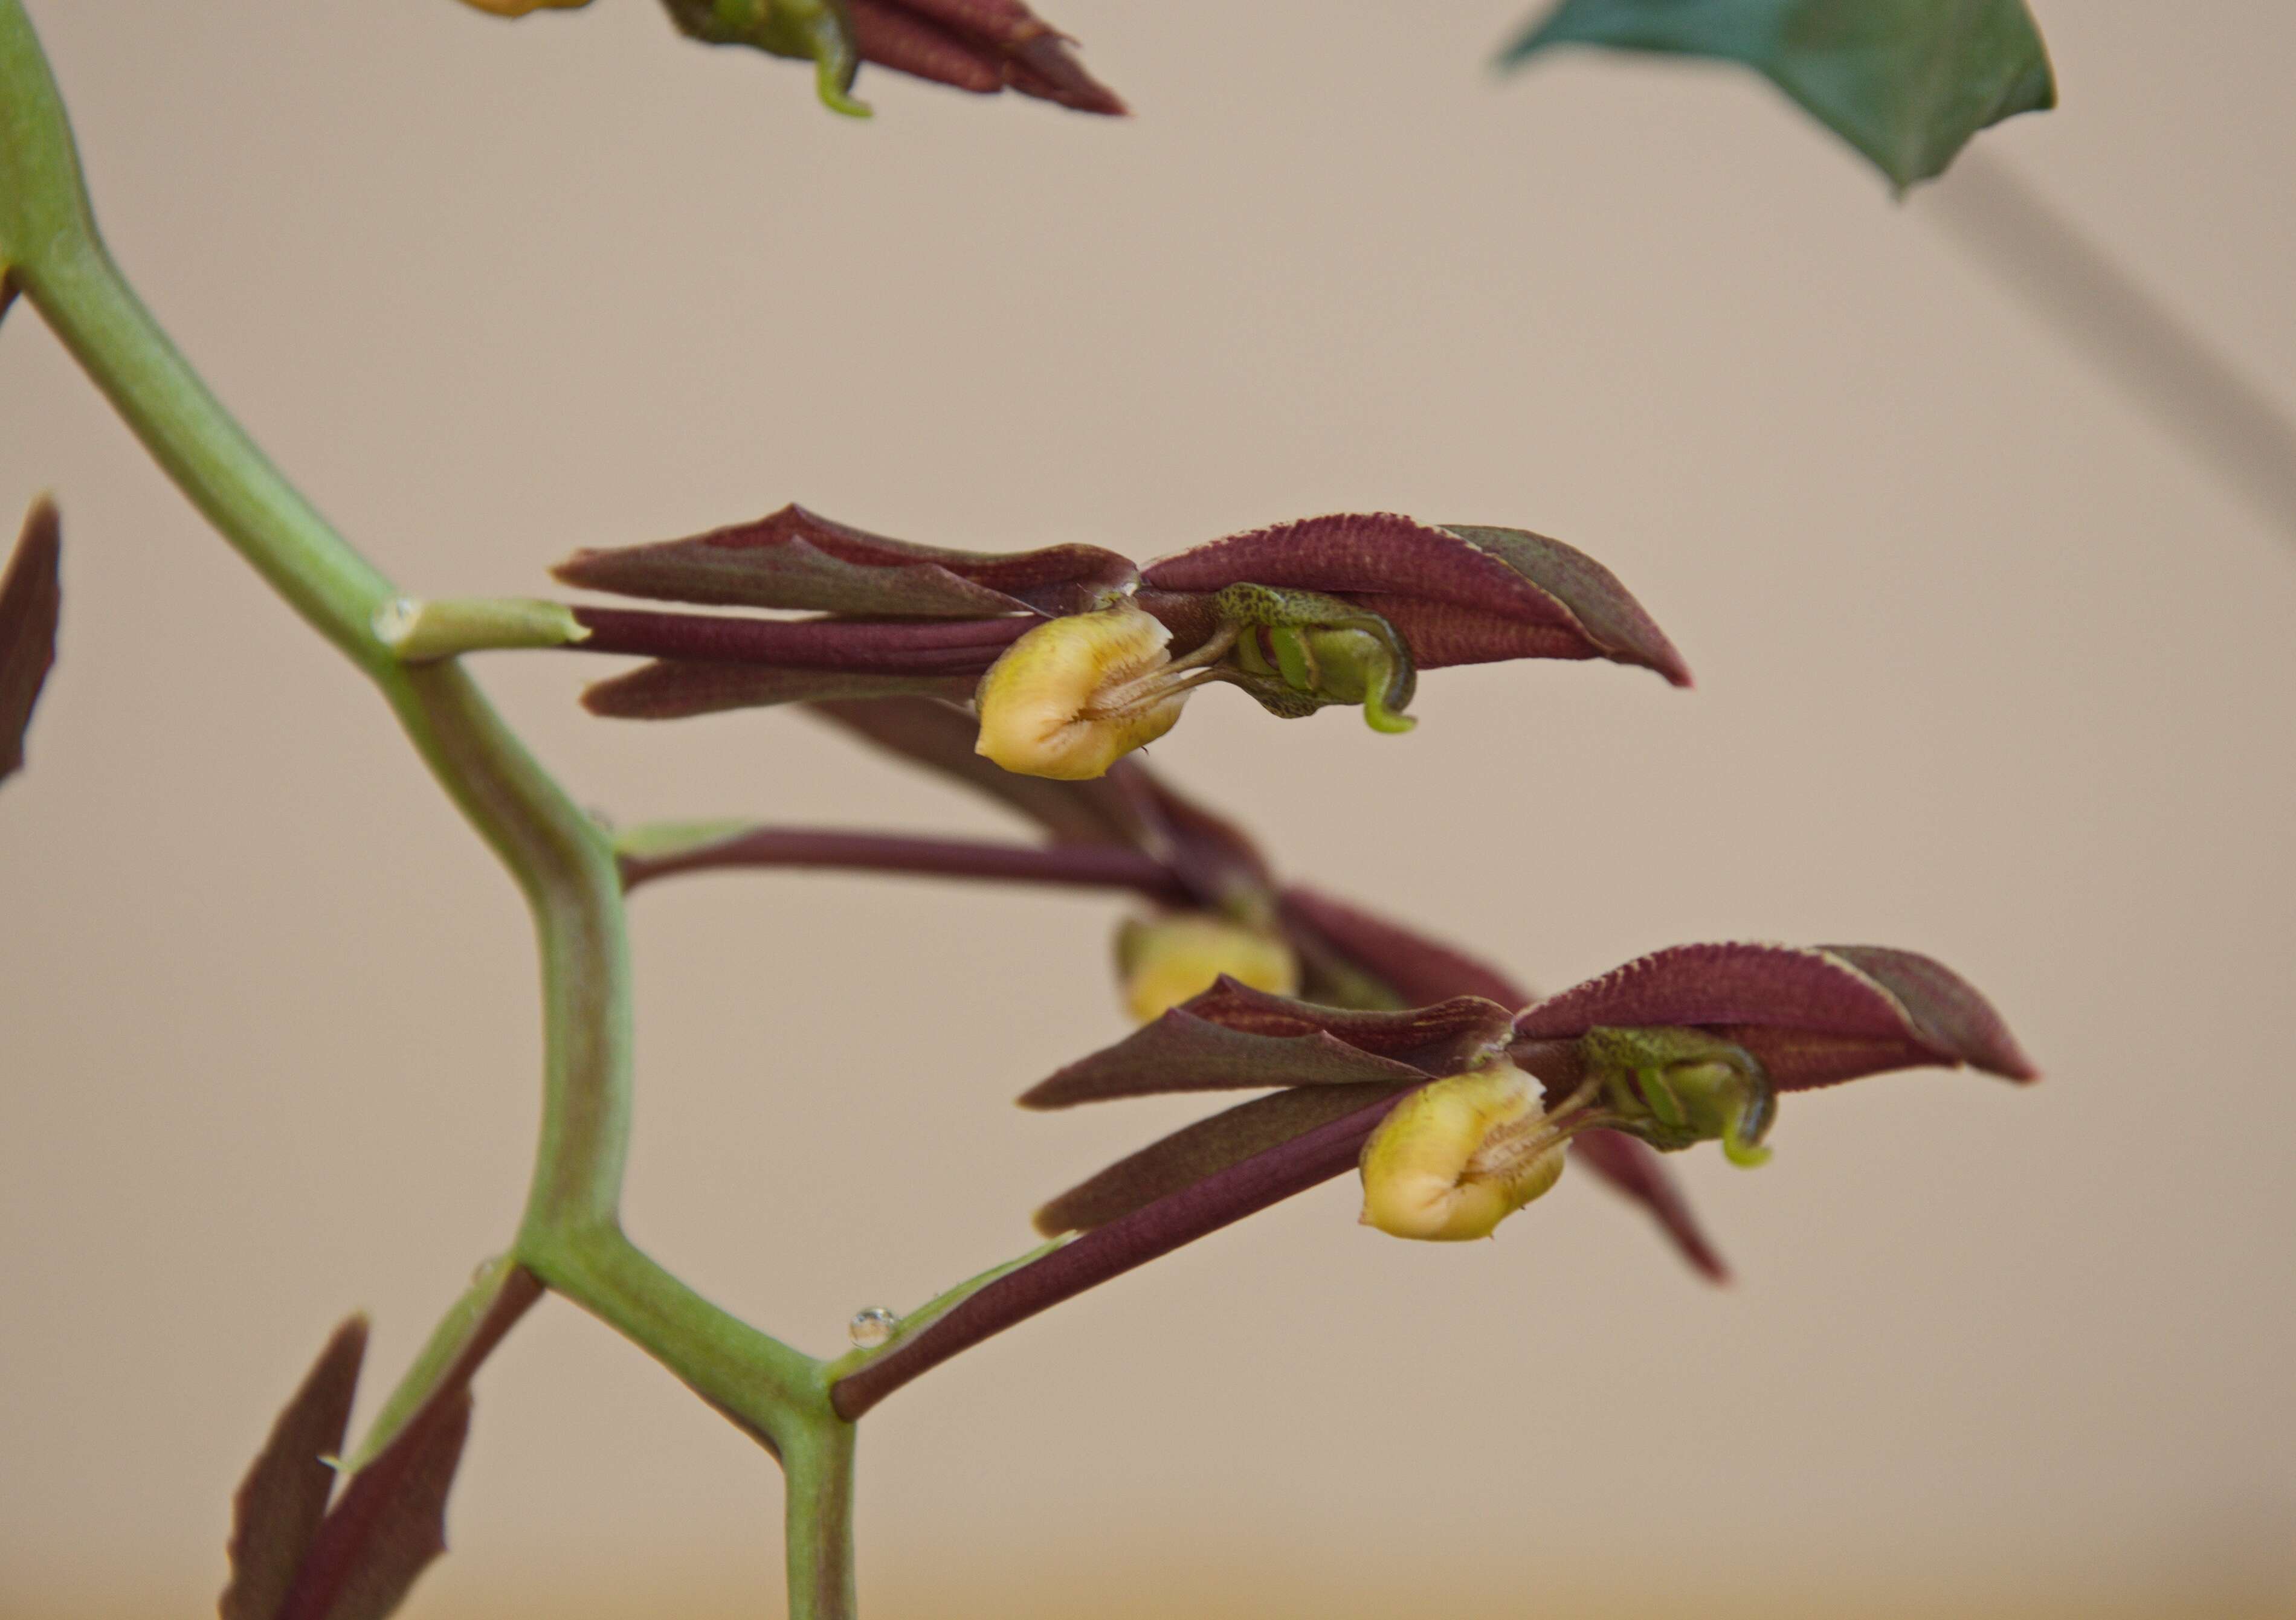 Image of Catasetum saccatum Lindl.